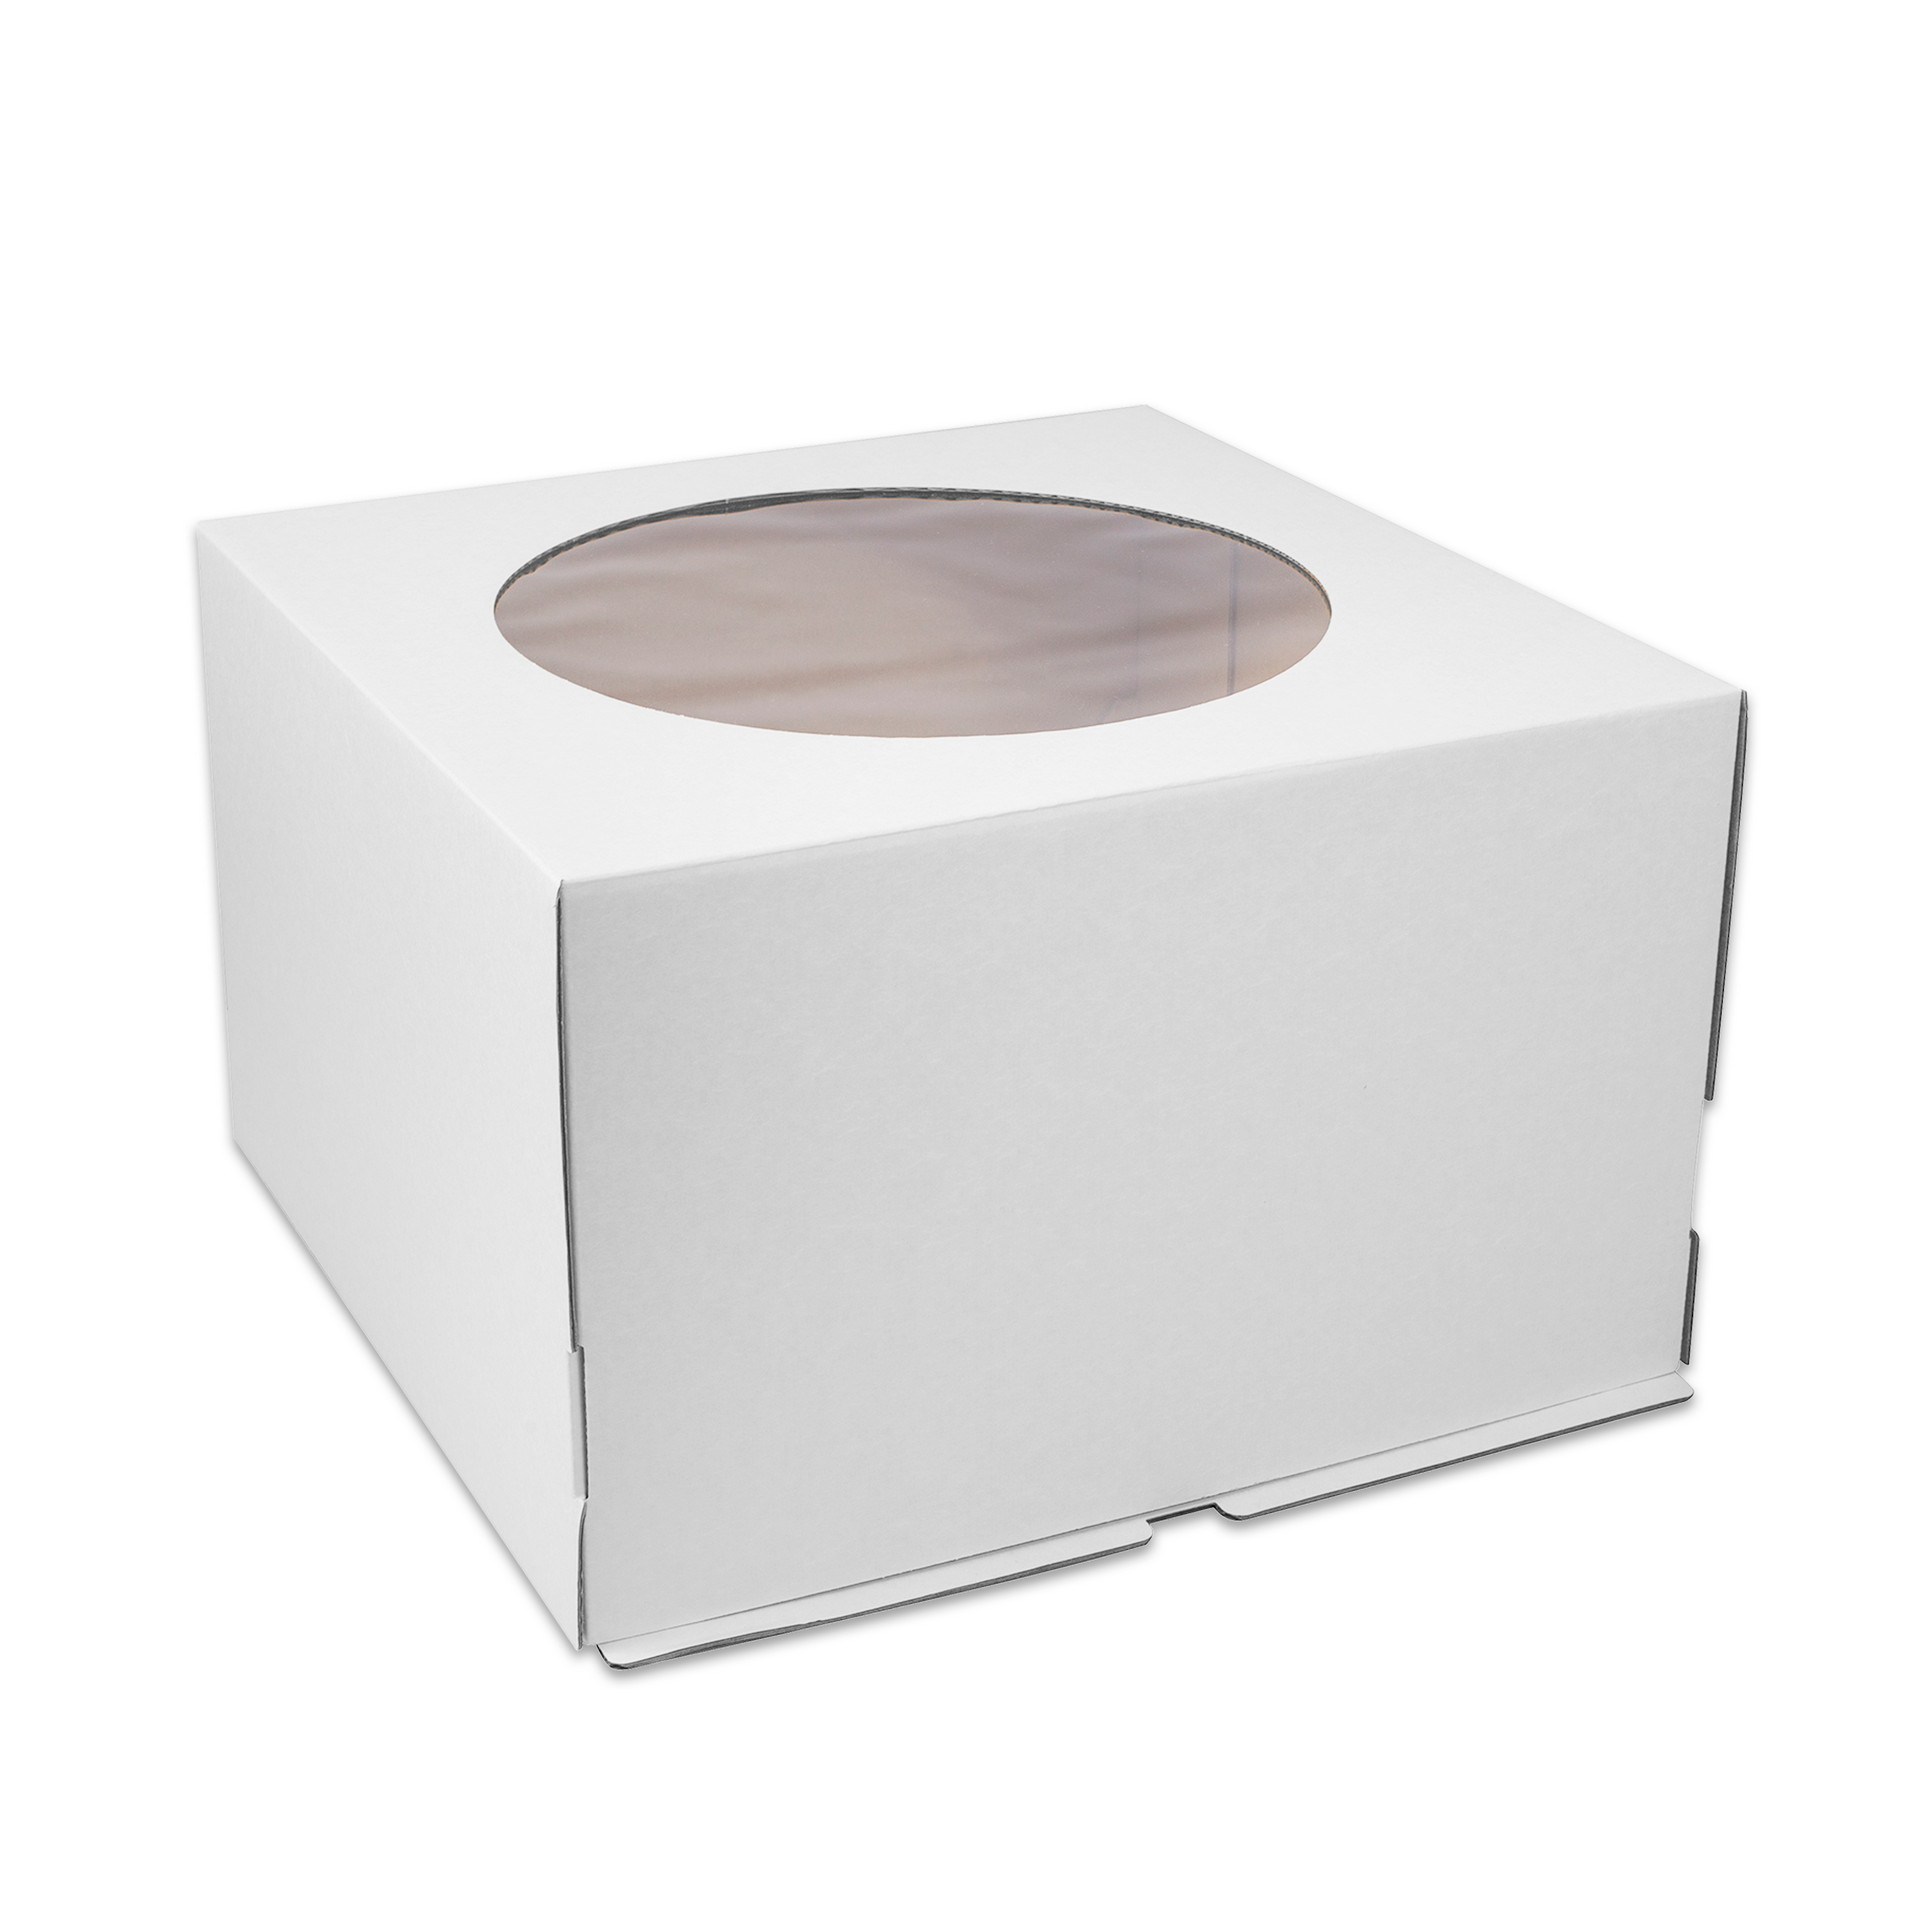 Коробка бумажная из гофрокартона для торта 300*300*190 мм белая с окном